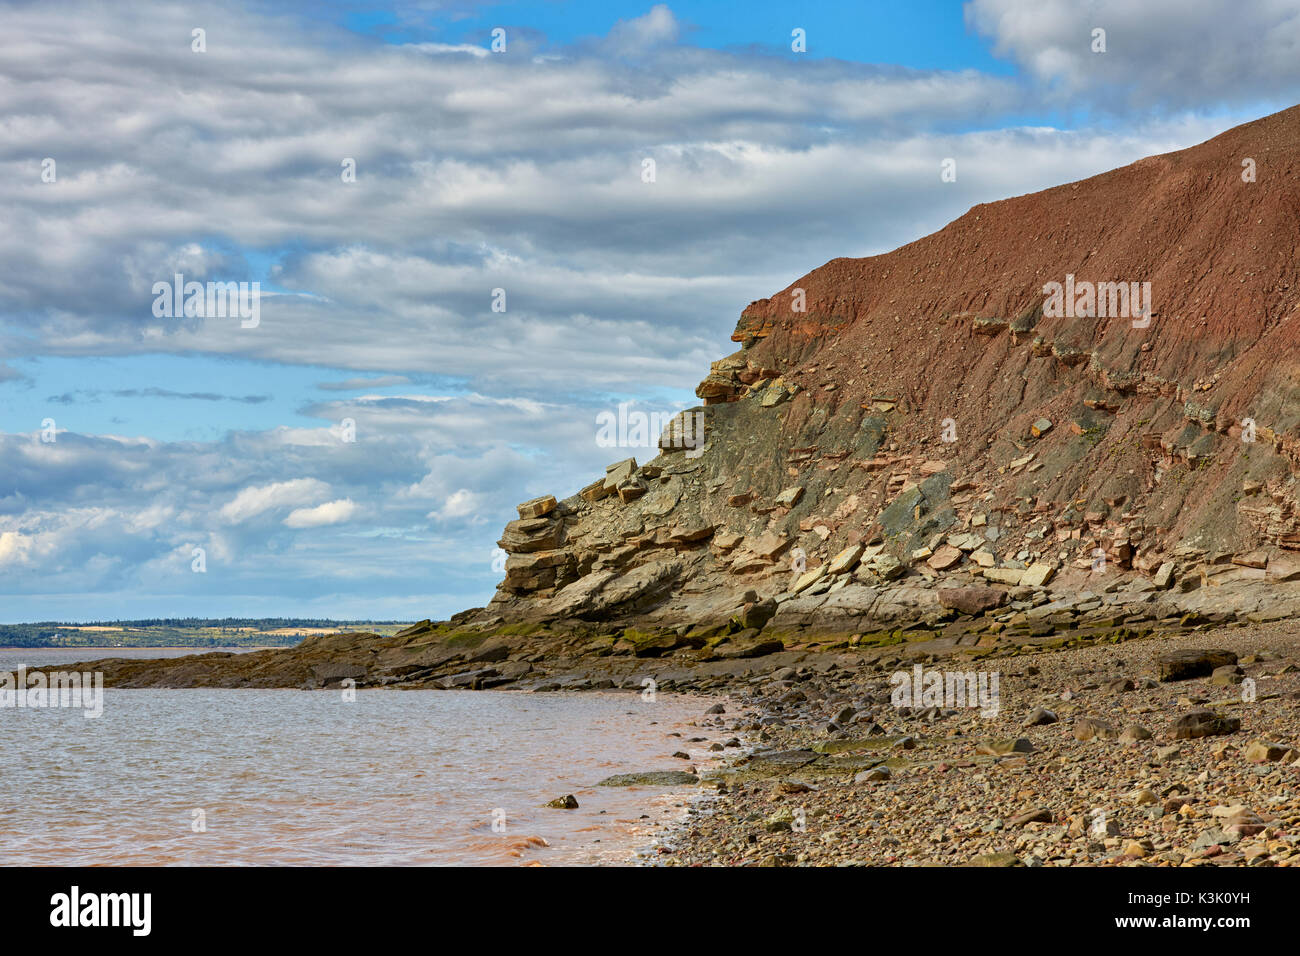 Joggins Fossil Cliffs, Nova Scotia, Canada Stock Photo